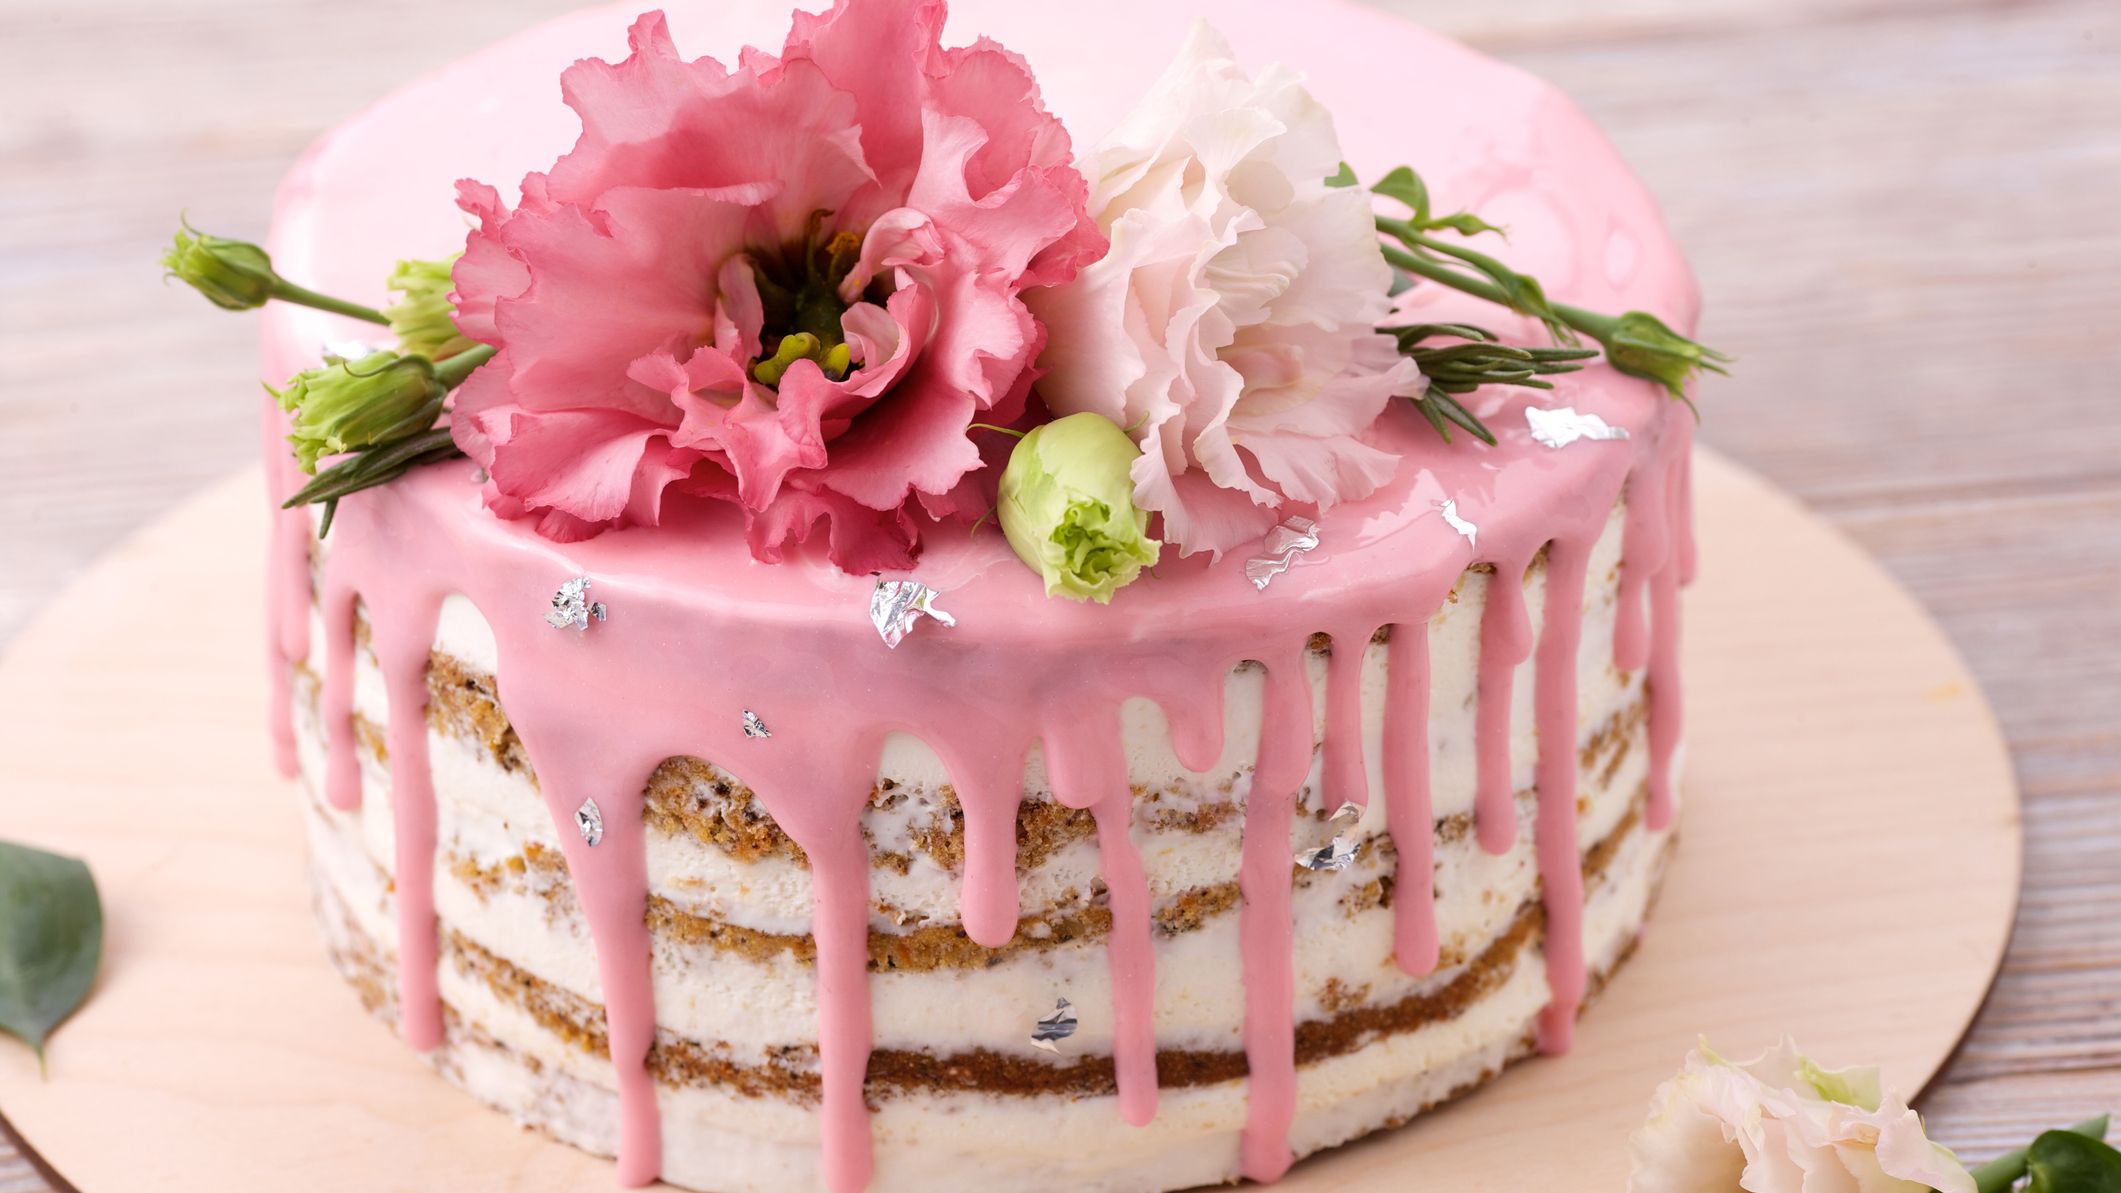 Décoration de gâteau joyeux anniversaire maman, décoration de gâteau  d'anniversaire, décoration de gâteau, fête d'anniversaire de maman,  décoration de